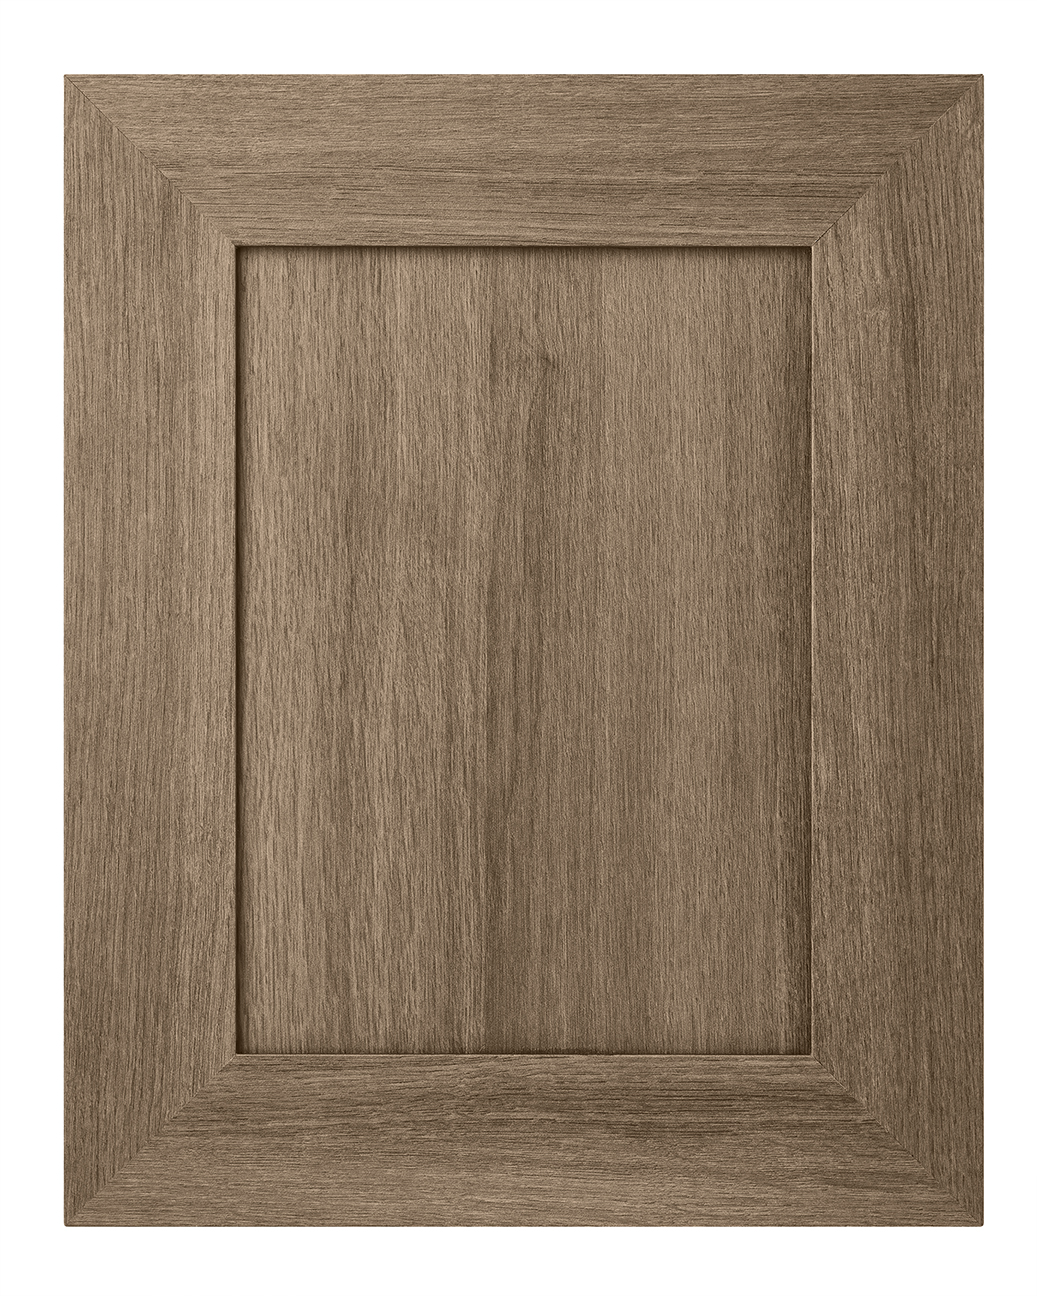 Alpha cabinet door in Tafisa 582 Fashionista